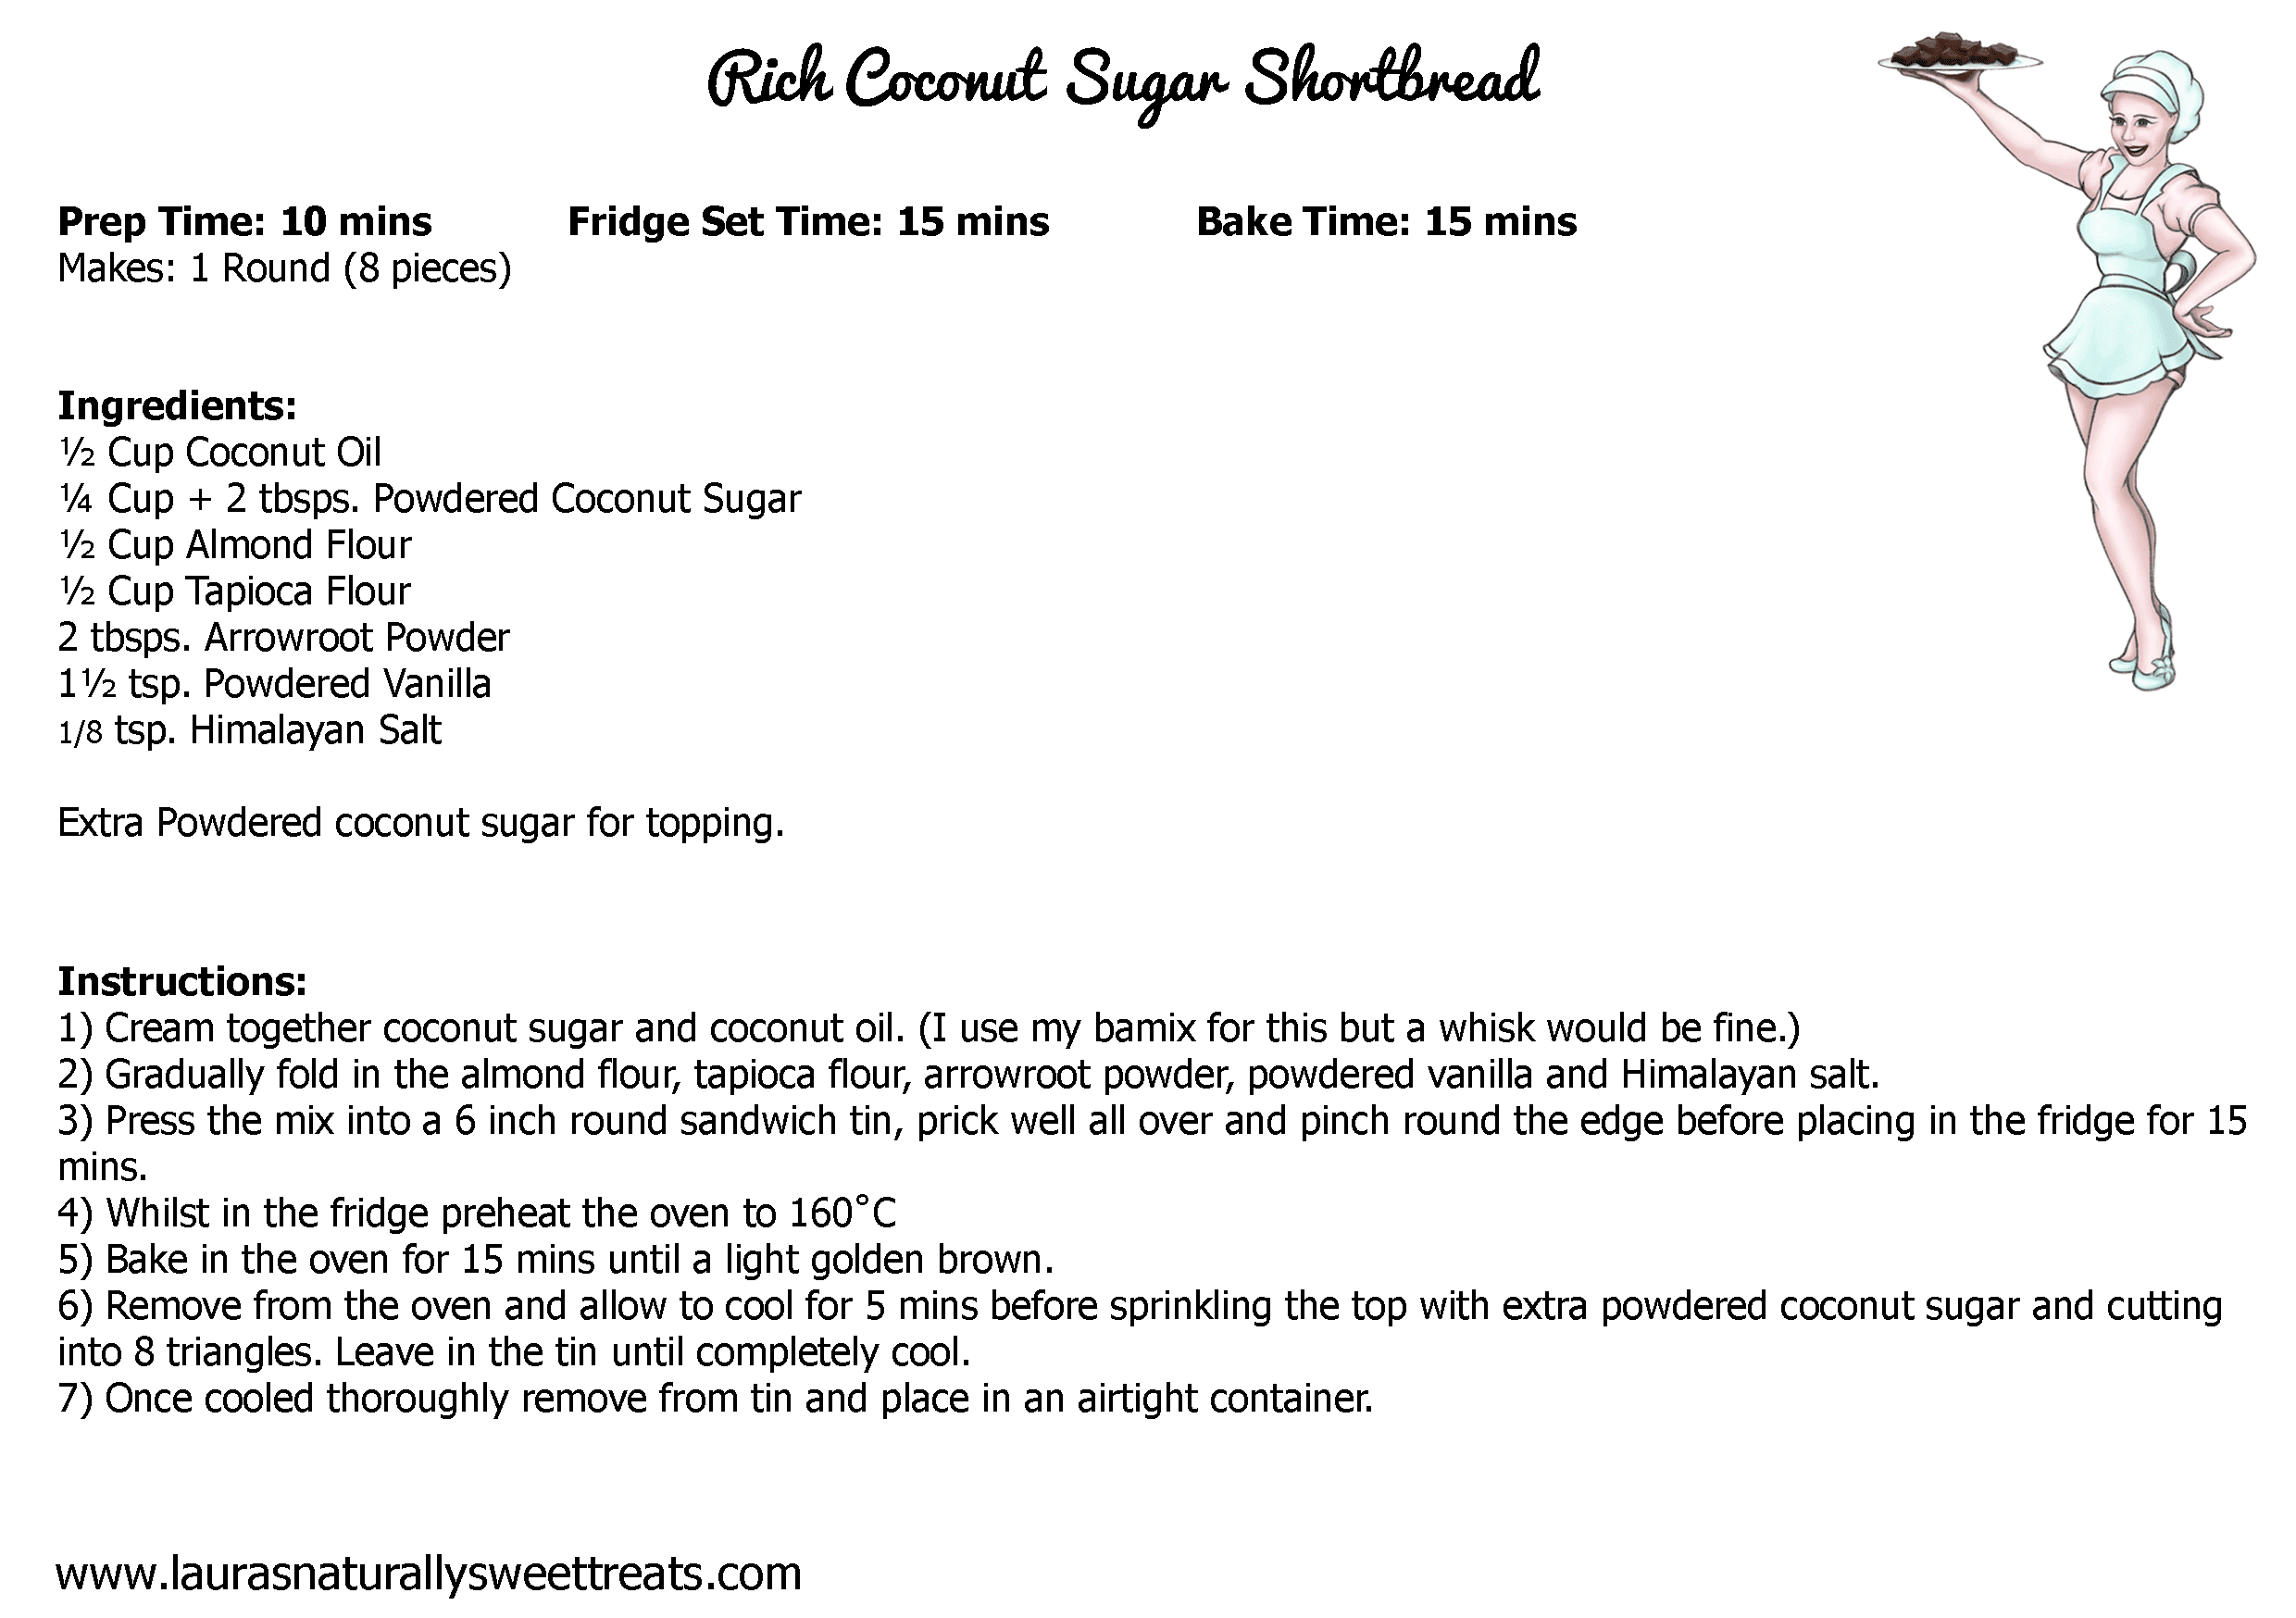 rich-coconut-sugar-shortbread-recipe-card